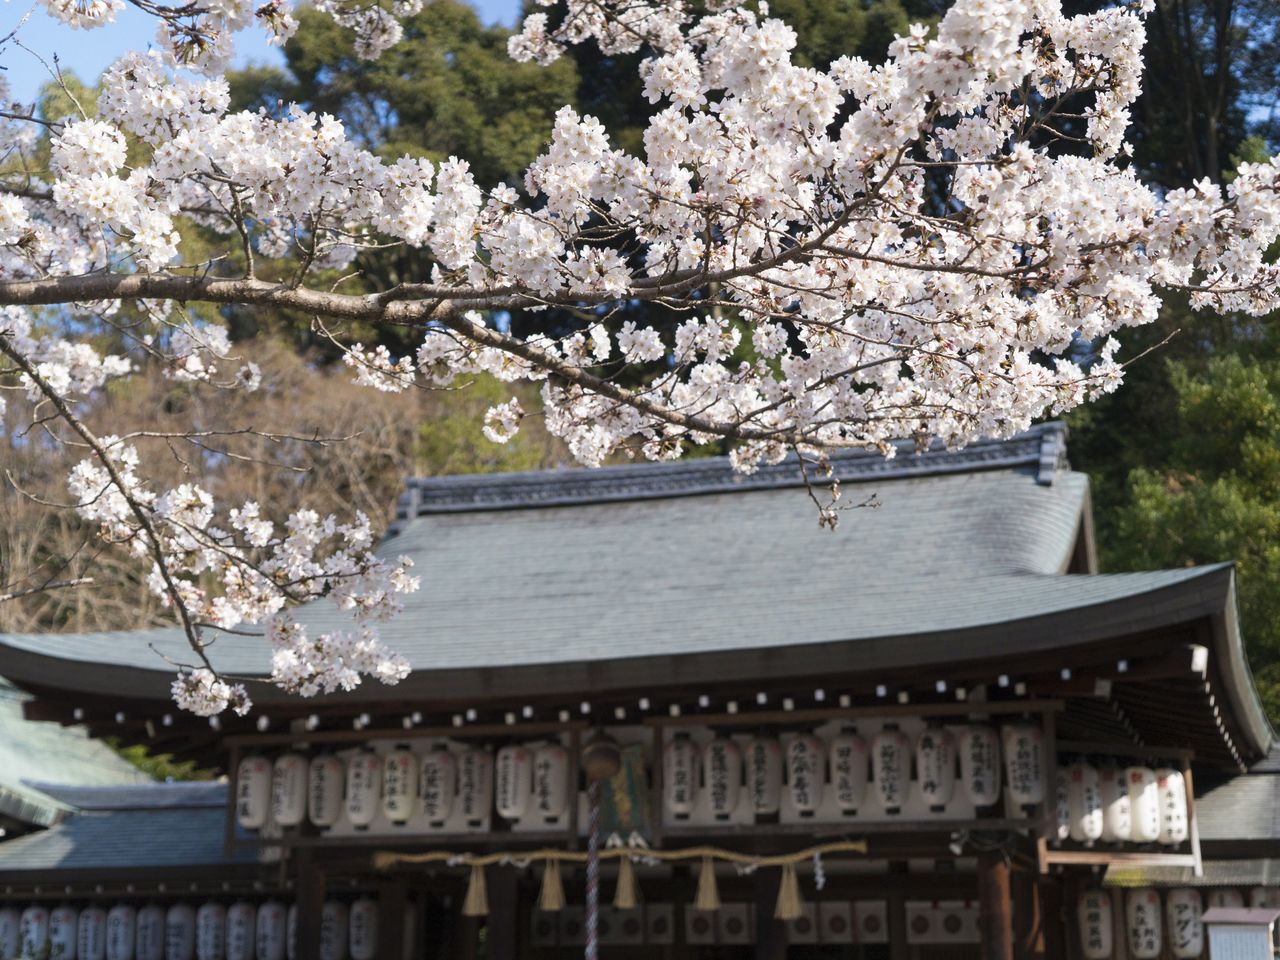 Цветущие вишни оживляют в пейзаж у главного здания святилища. Каждый год в первое воскресенье апреля здесь проводится Ока мацури, праздник цветения сакуры